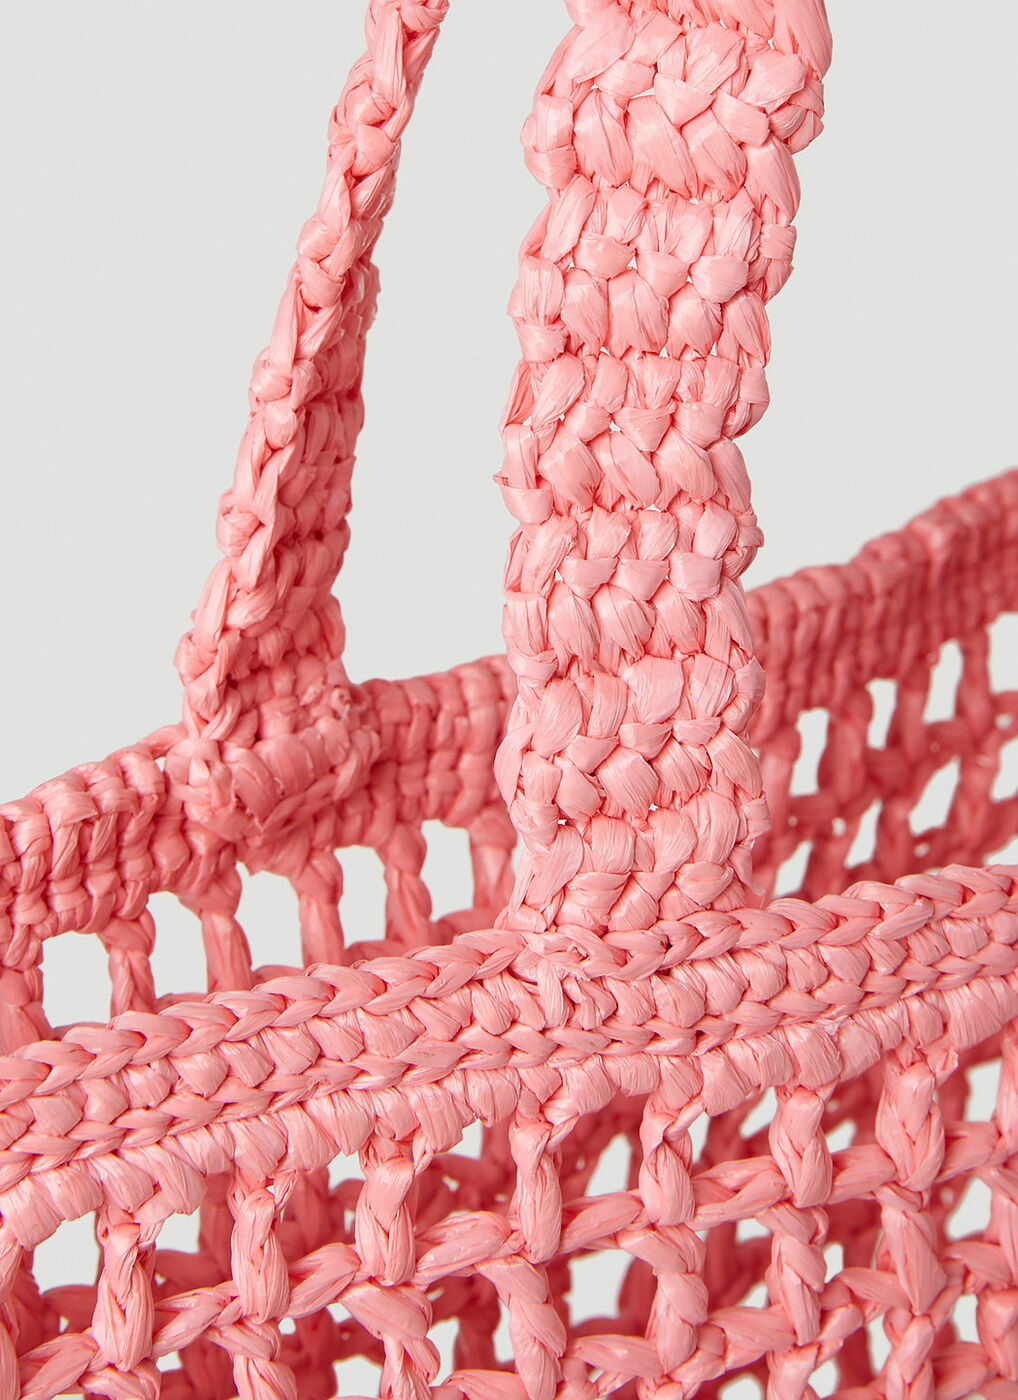 Prada Pink logoed crochet tote bag